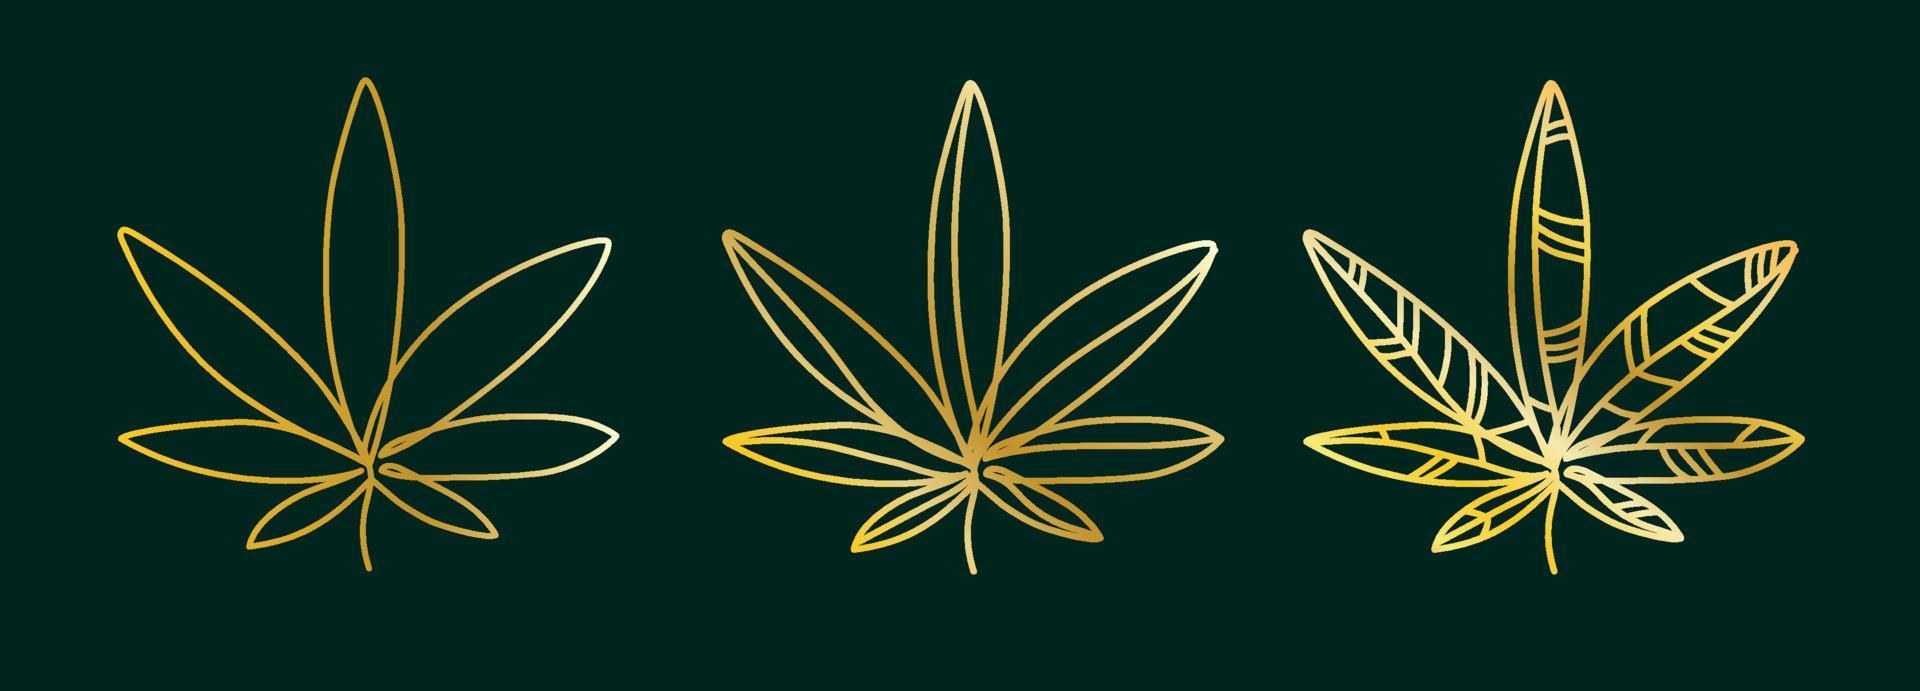 goldenes cannabisblatt, hanf auf einem dunkelgrünen hintergrundsatz von logos.einfaches cannabisvektordesign grafische illustration minimalistisch vektor